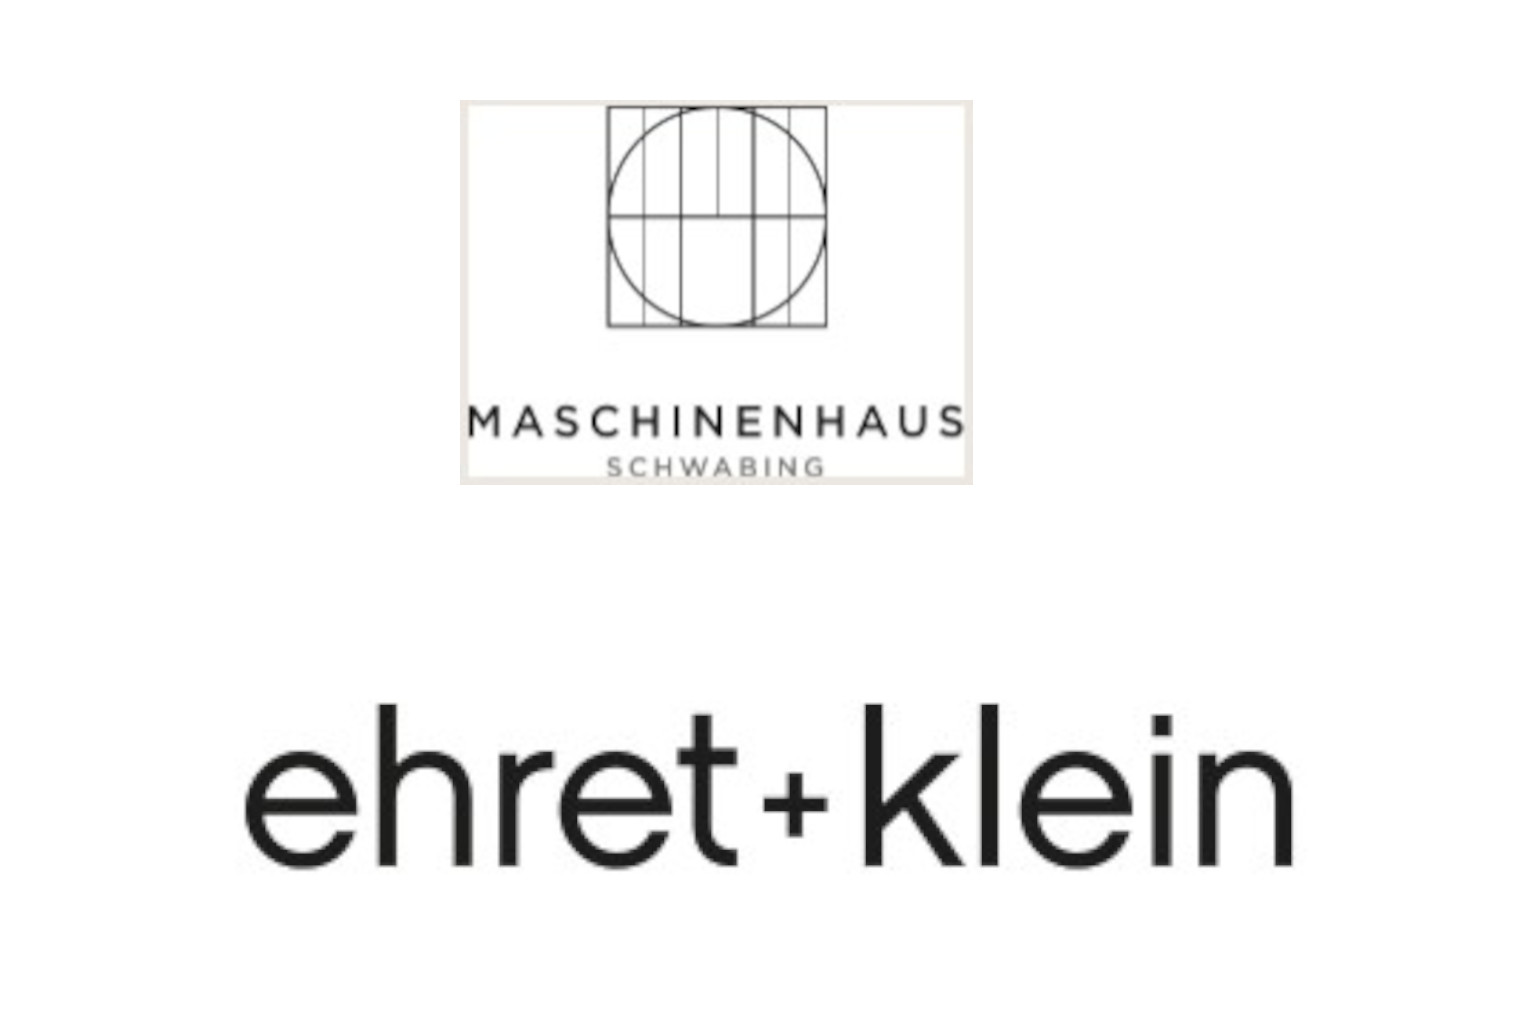 Logos Maschinenhaus Schwabing und ehret+klein AG